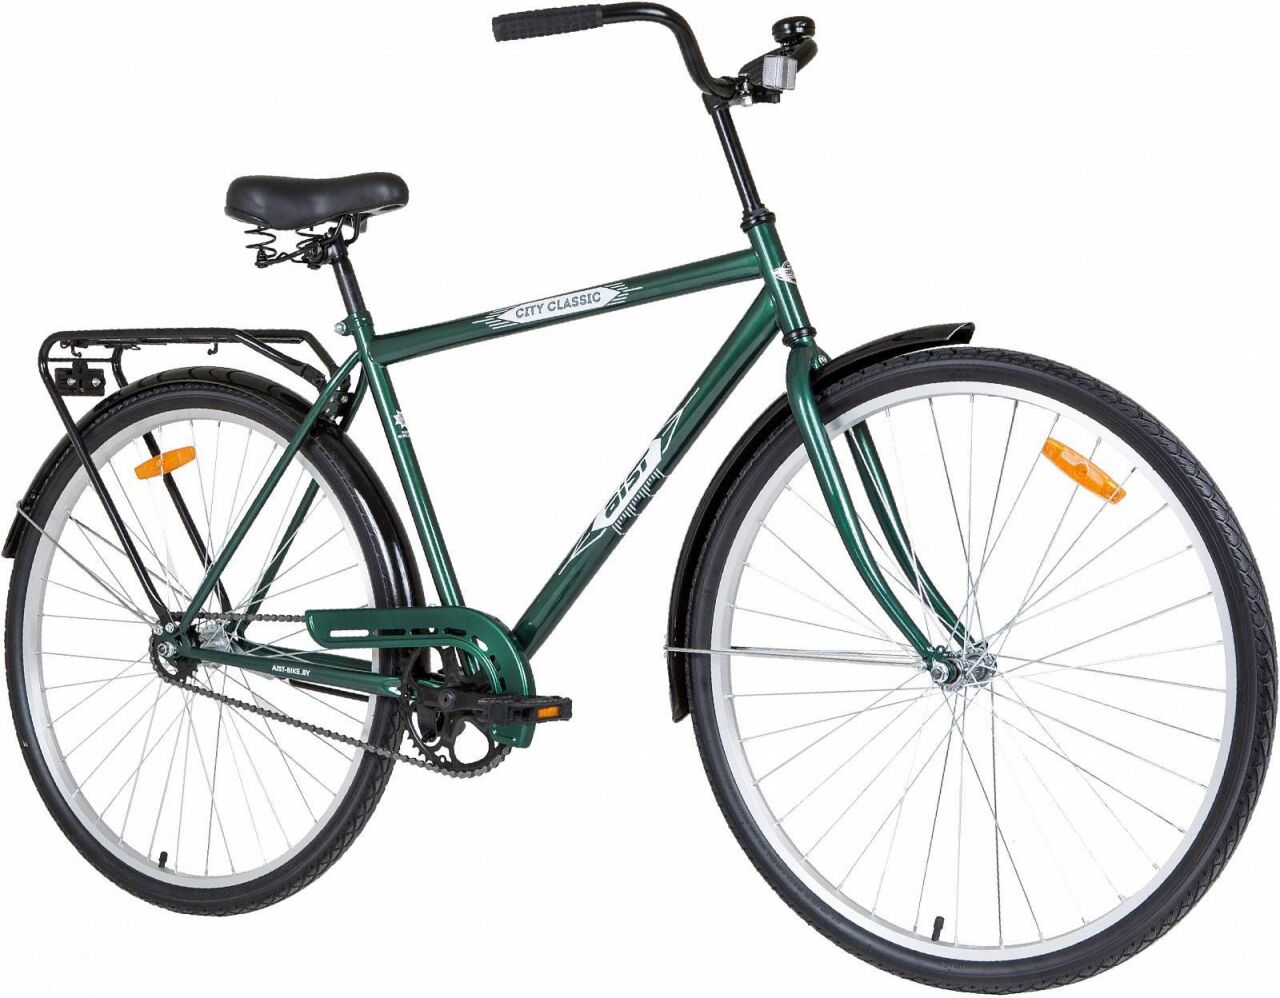 Велосипед Aist 28-130 (19, зеленый, 2019)